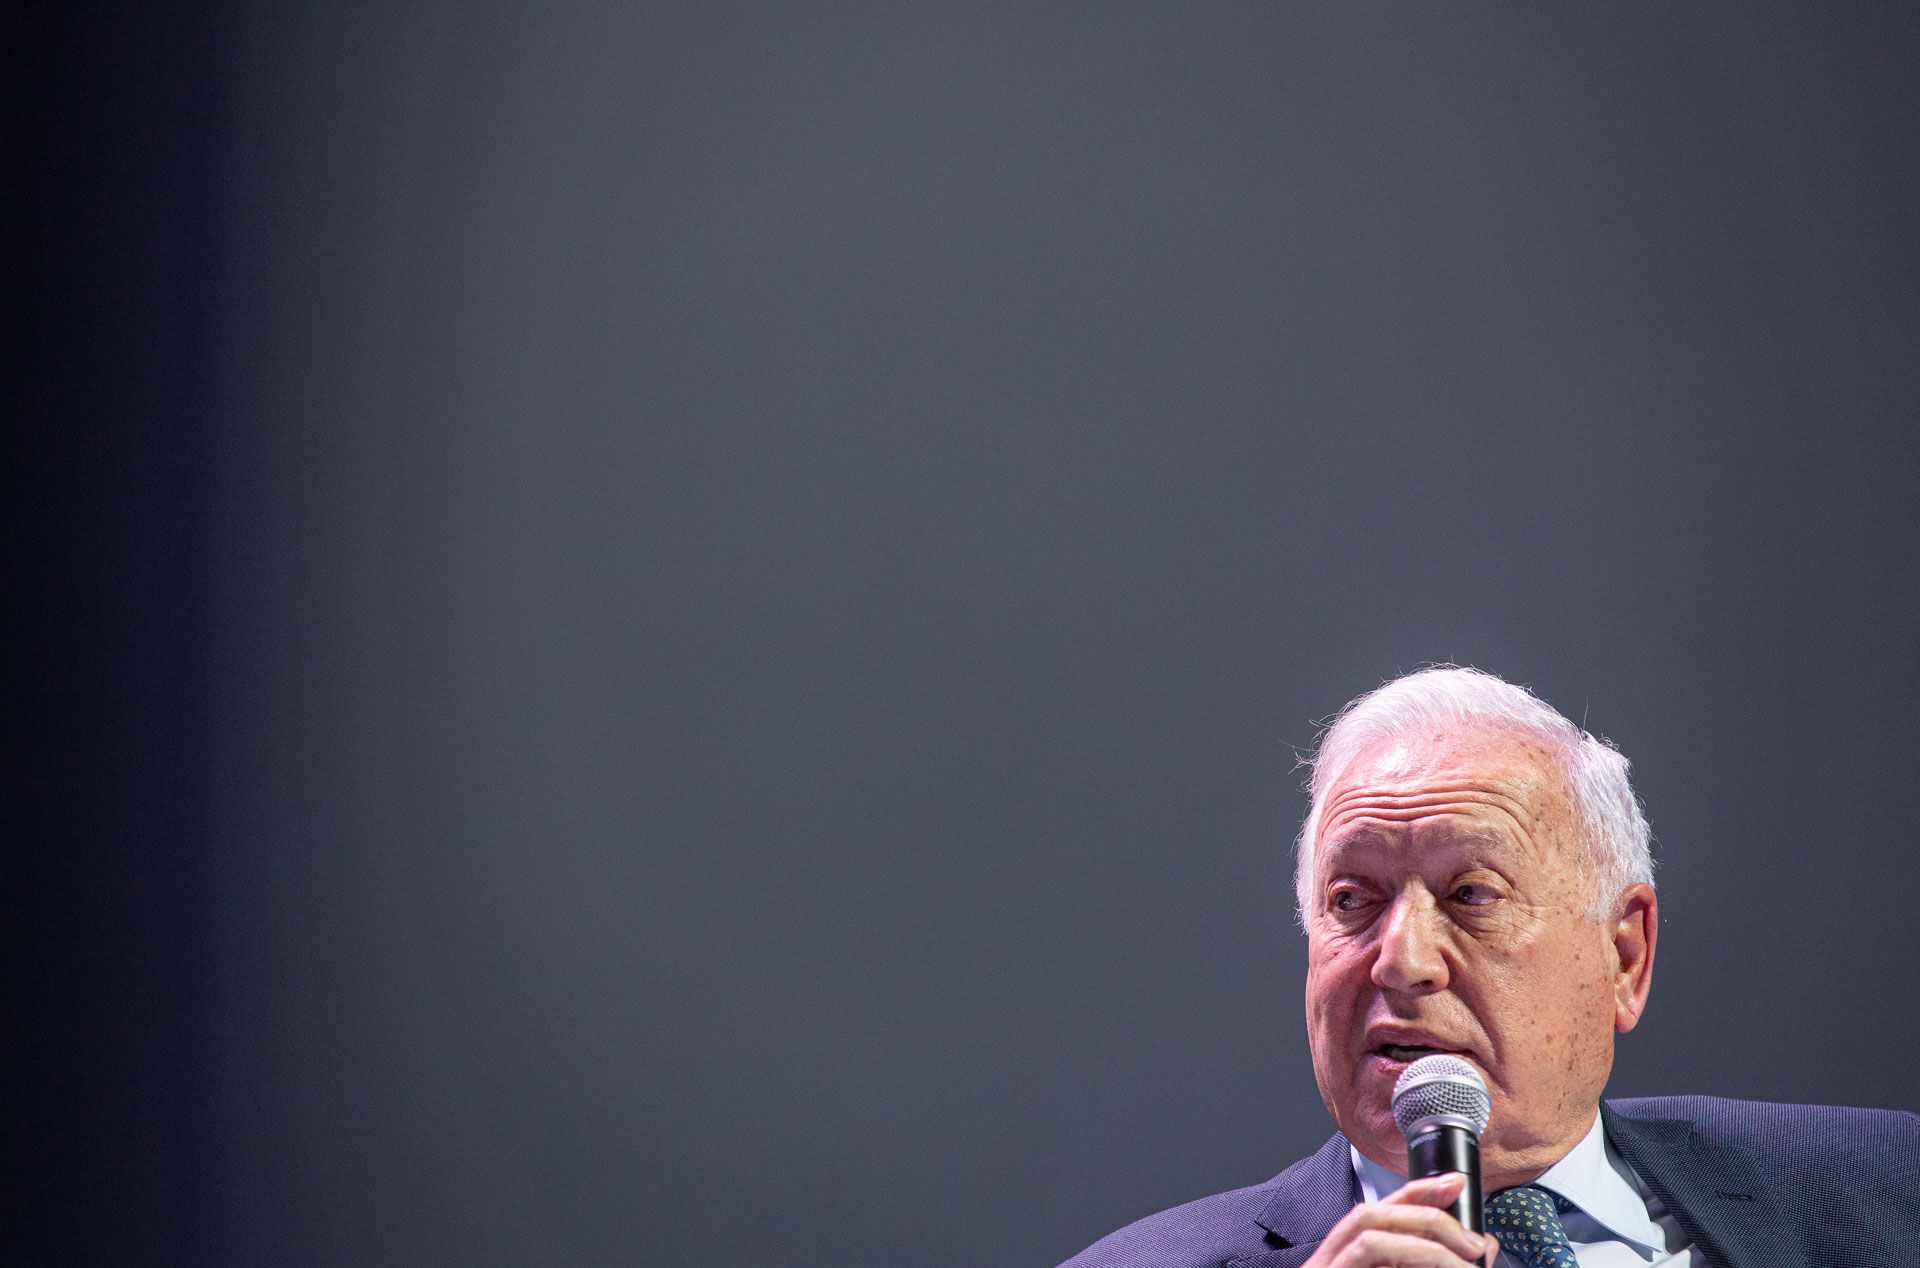 Así ha sido el cara a cara entre García-Margallo y Pablo Iglesias en el Club INFORMACIÓN